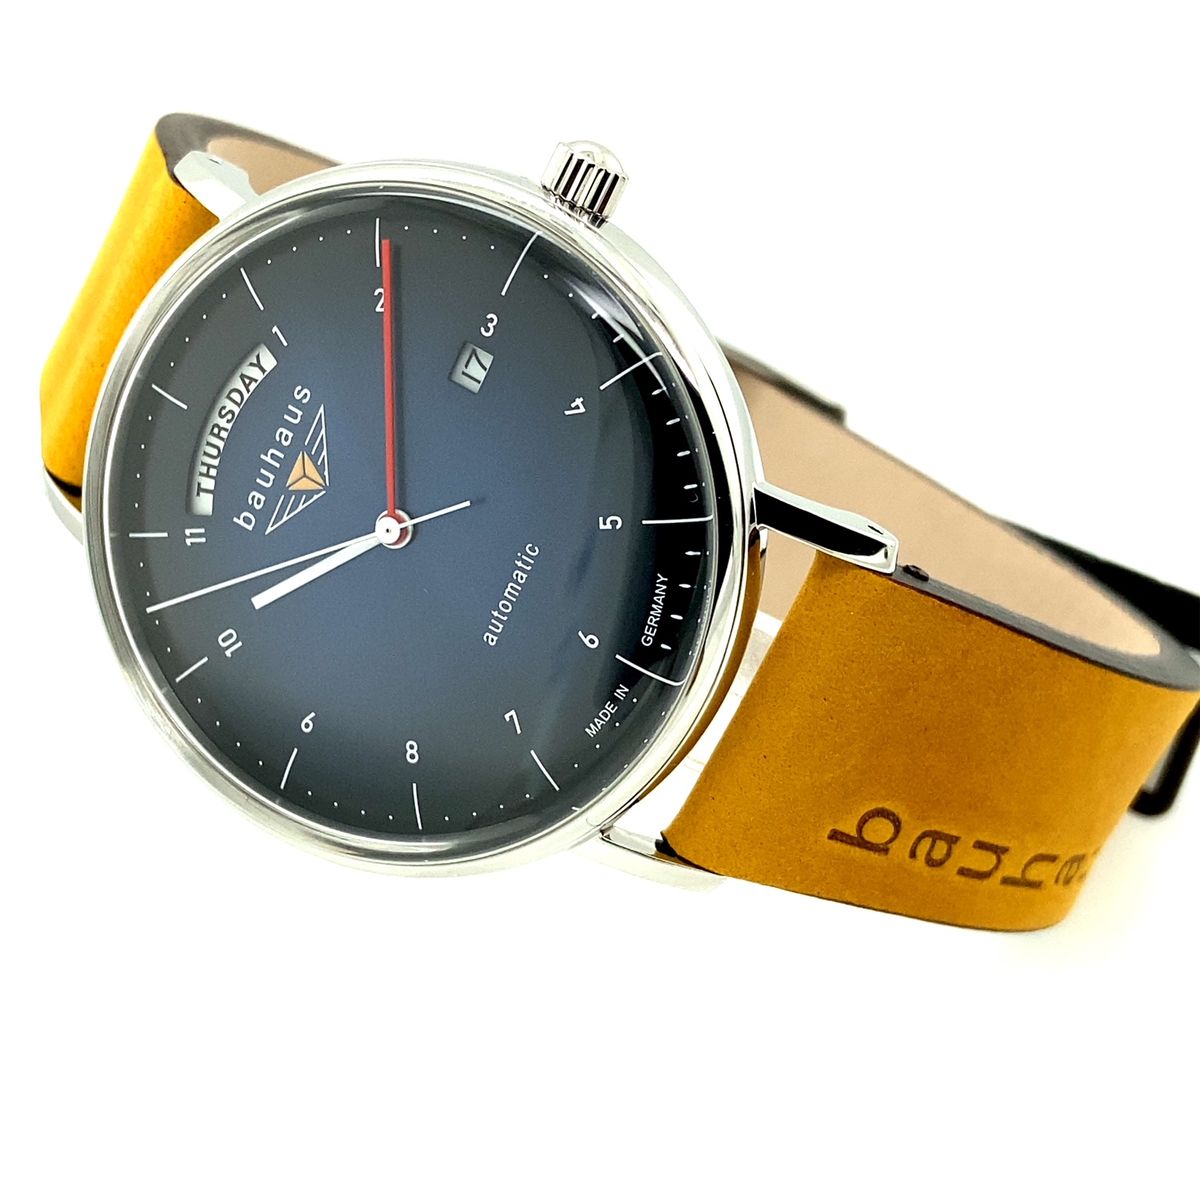 Bauhaus Automatik, 2162-3, dunkelblau | Enjoy Your Watch, Online Shop für  Uhren, Uhrenzubehör und Uhren-Accessoires